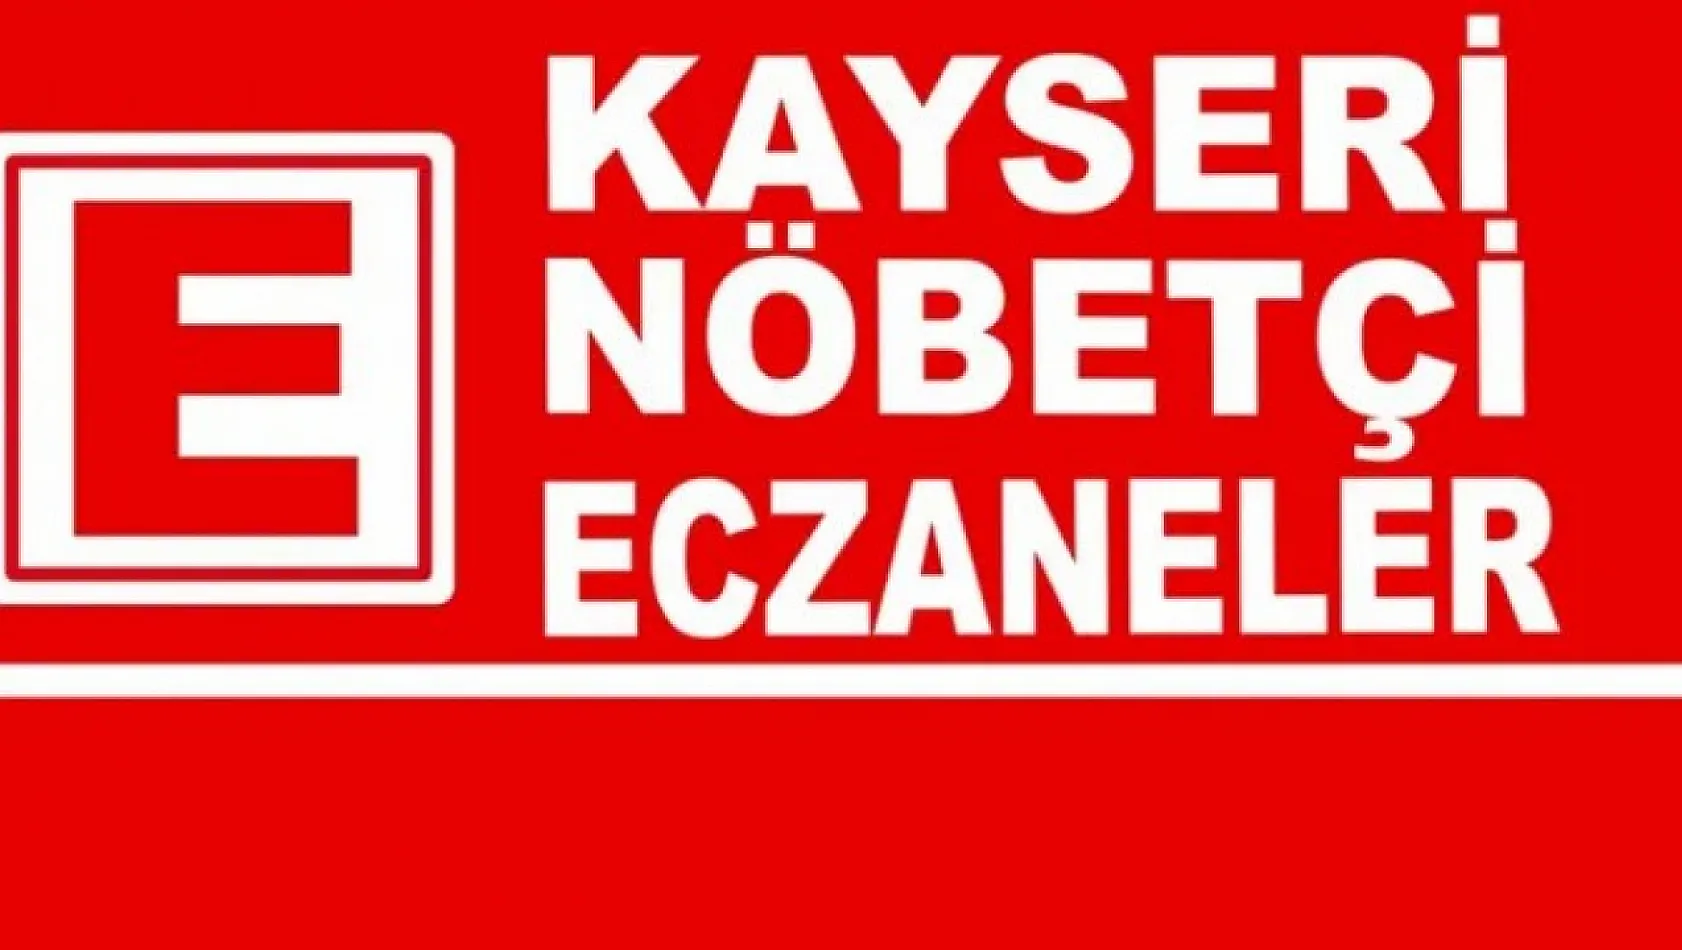 1 Mayıs Kayseri ve ilçelerinde nöbetçi eczane adresi ve telefonları